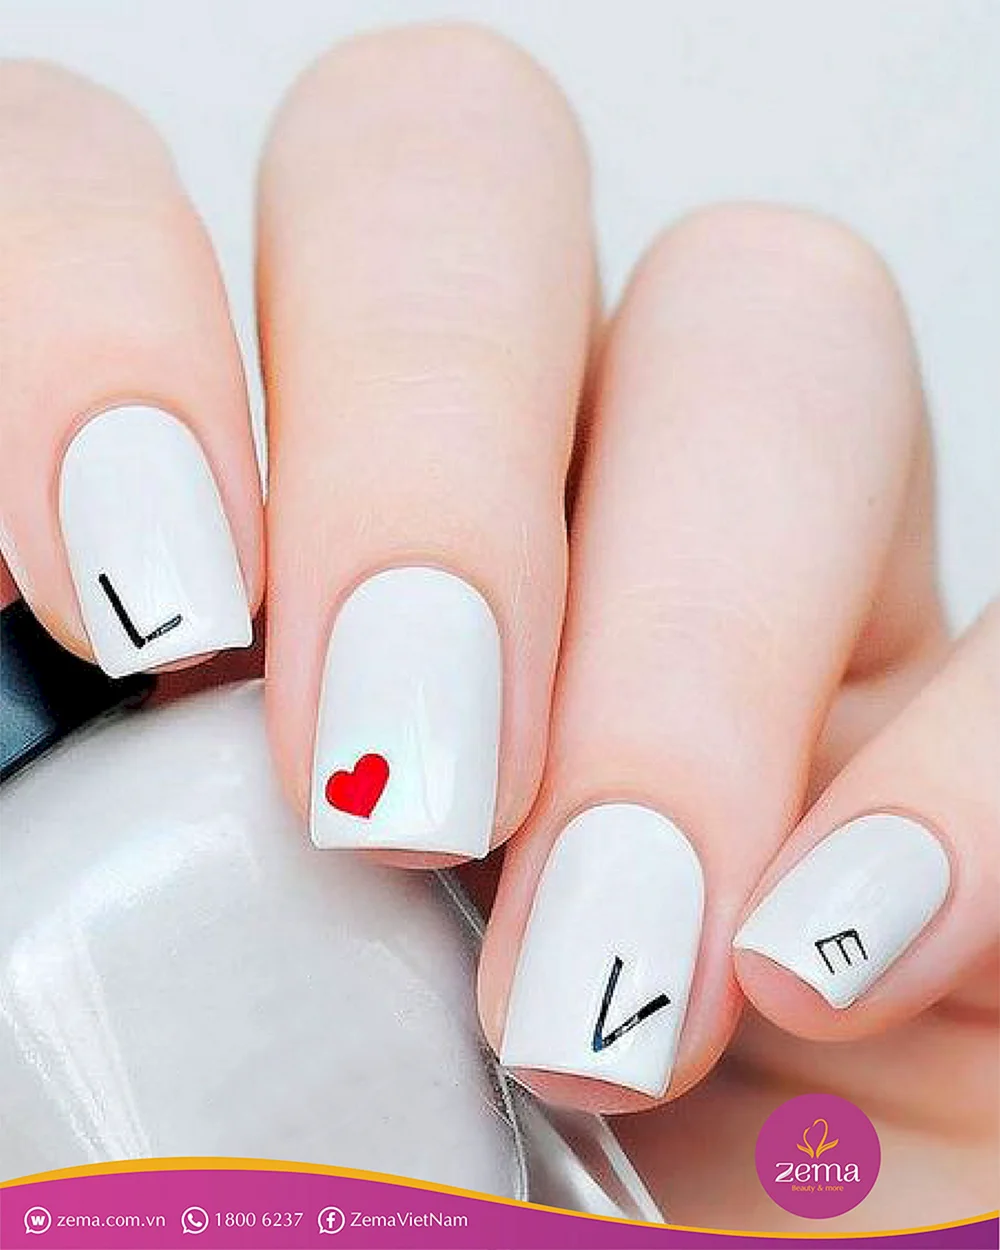 Love Nails